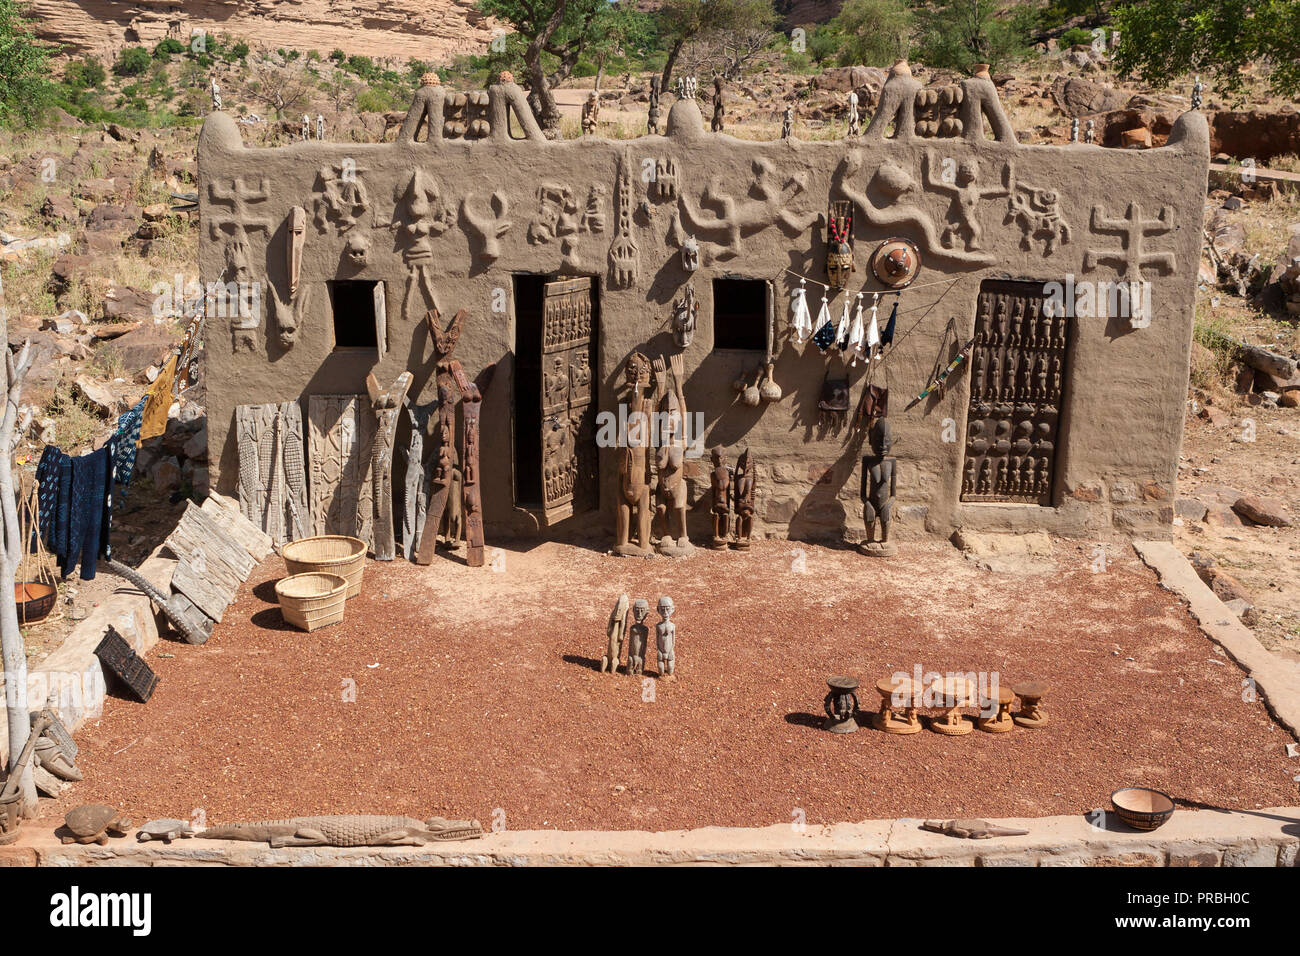 Une maison avec l'art Dogon traditionnel, sculptures et objets au Mali, Afrique Banque D'Images